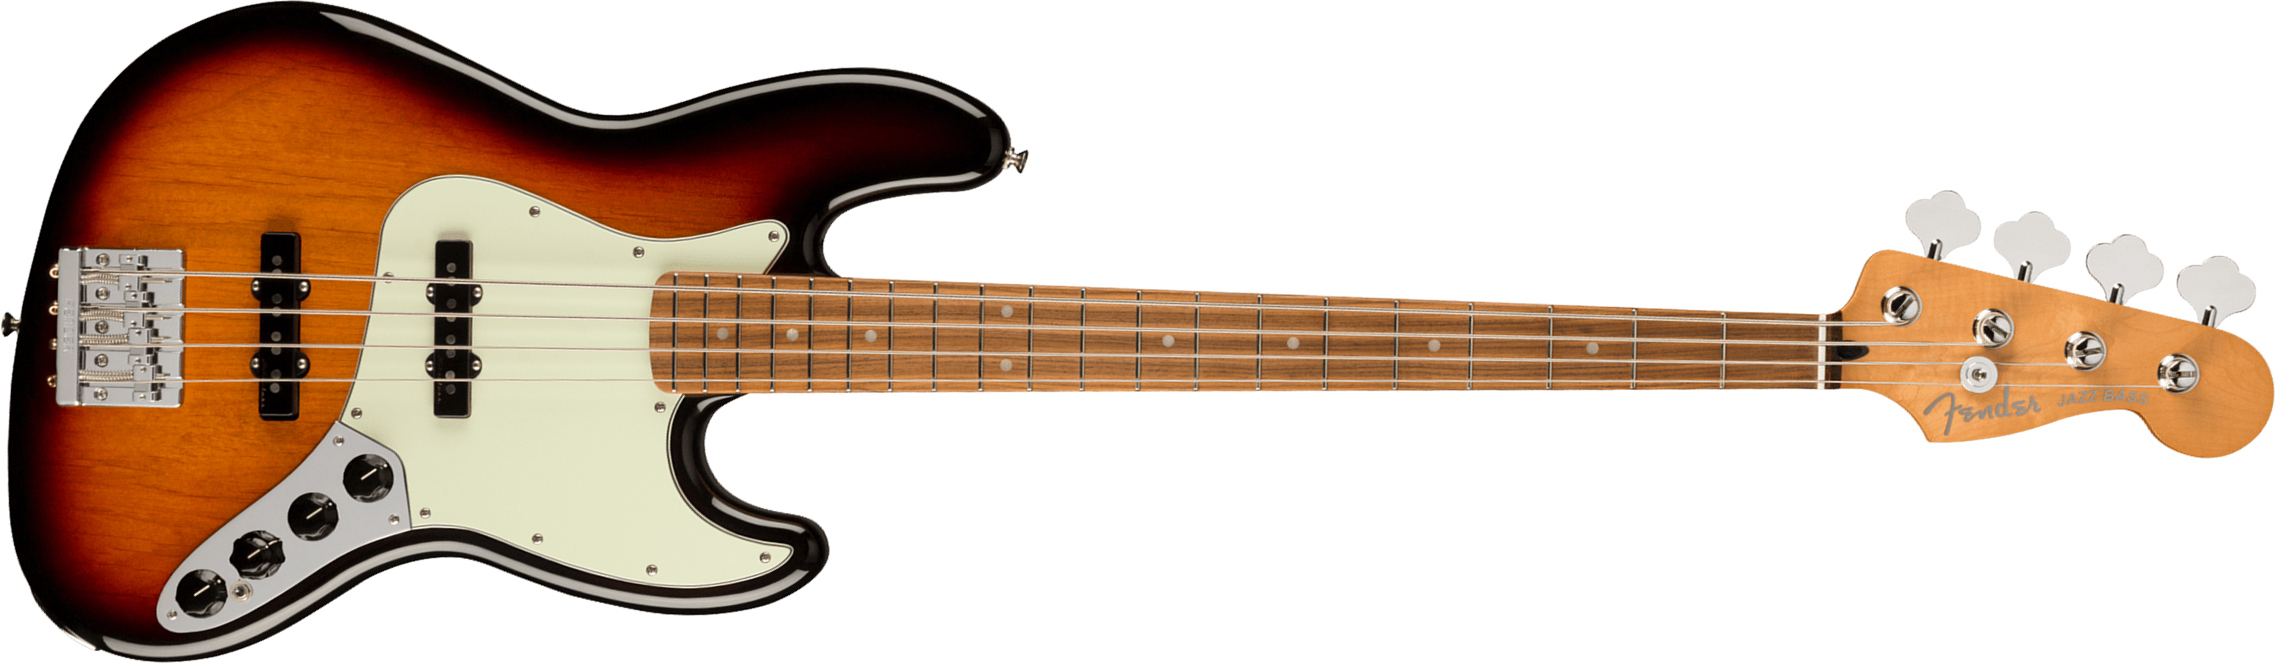 Fender Jazz Bass Player Plus Mex Active Pf - 3-color Sunburst - Bajo eléctrico de cuerpo sólido - Main picture